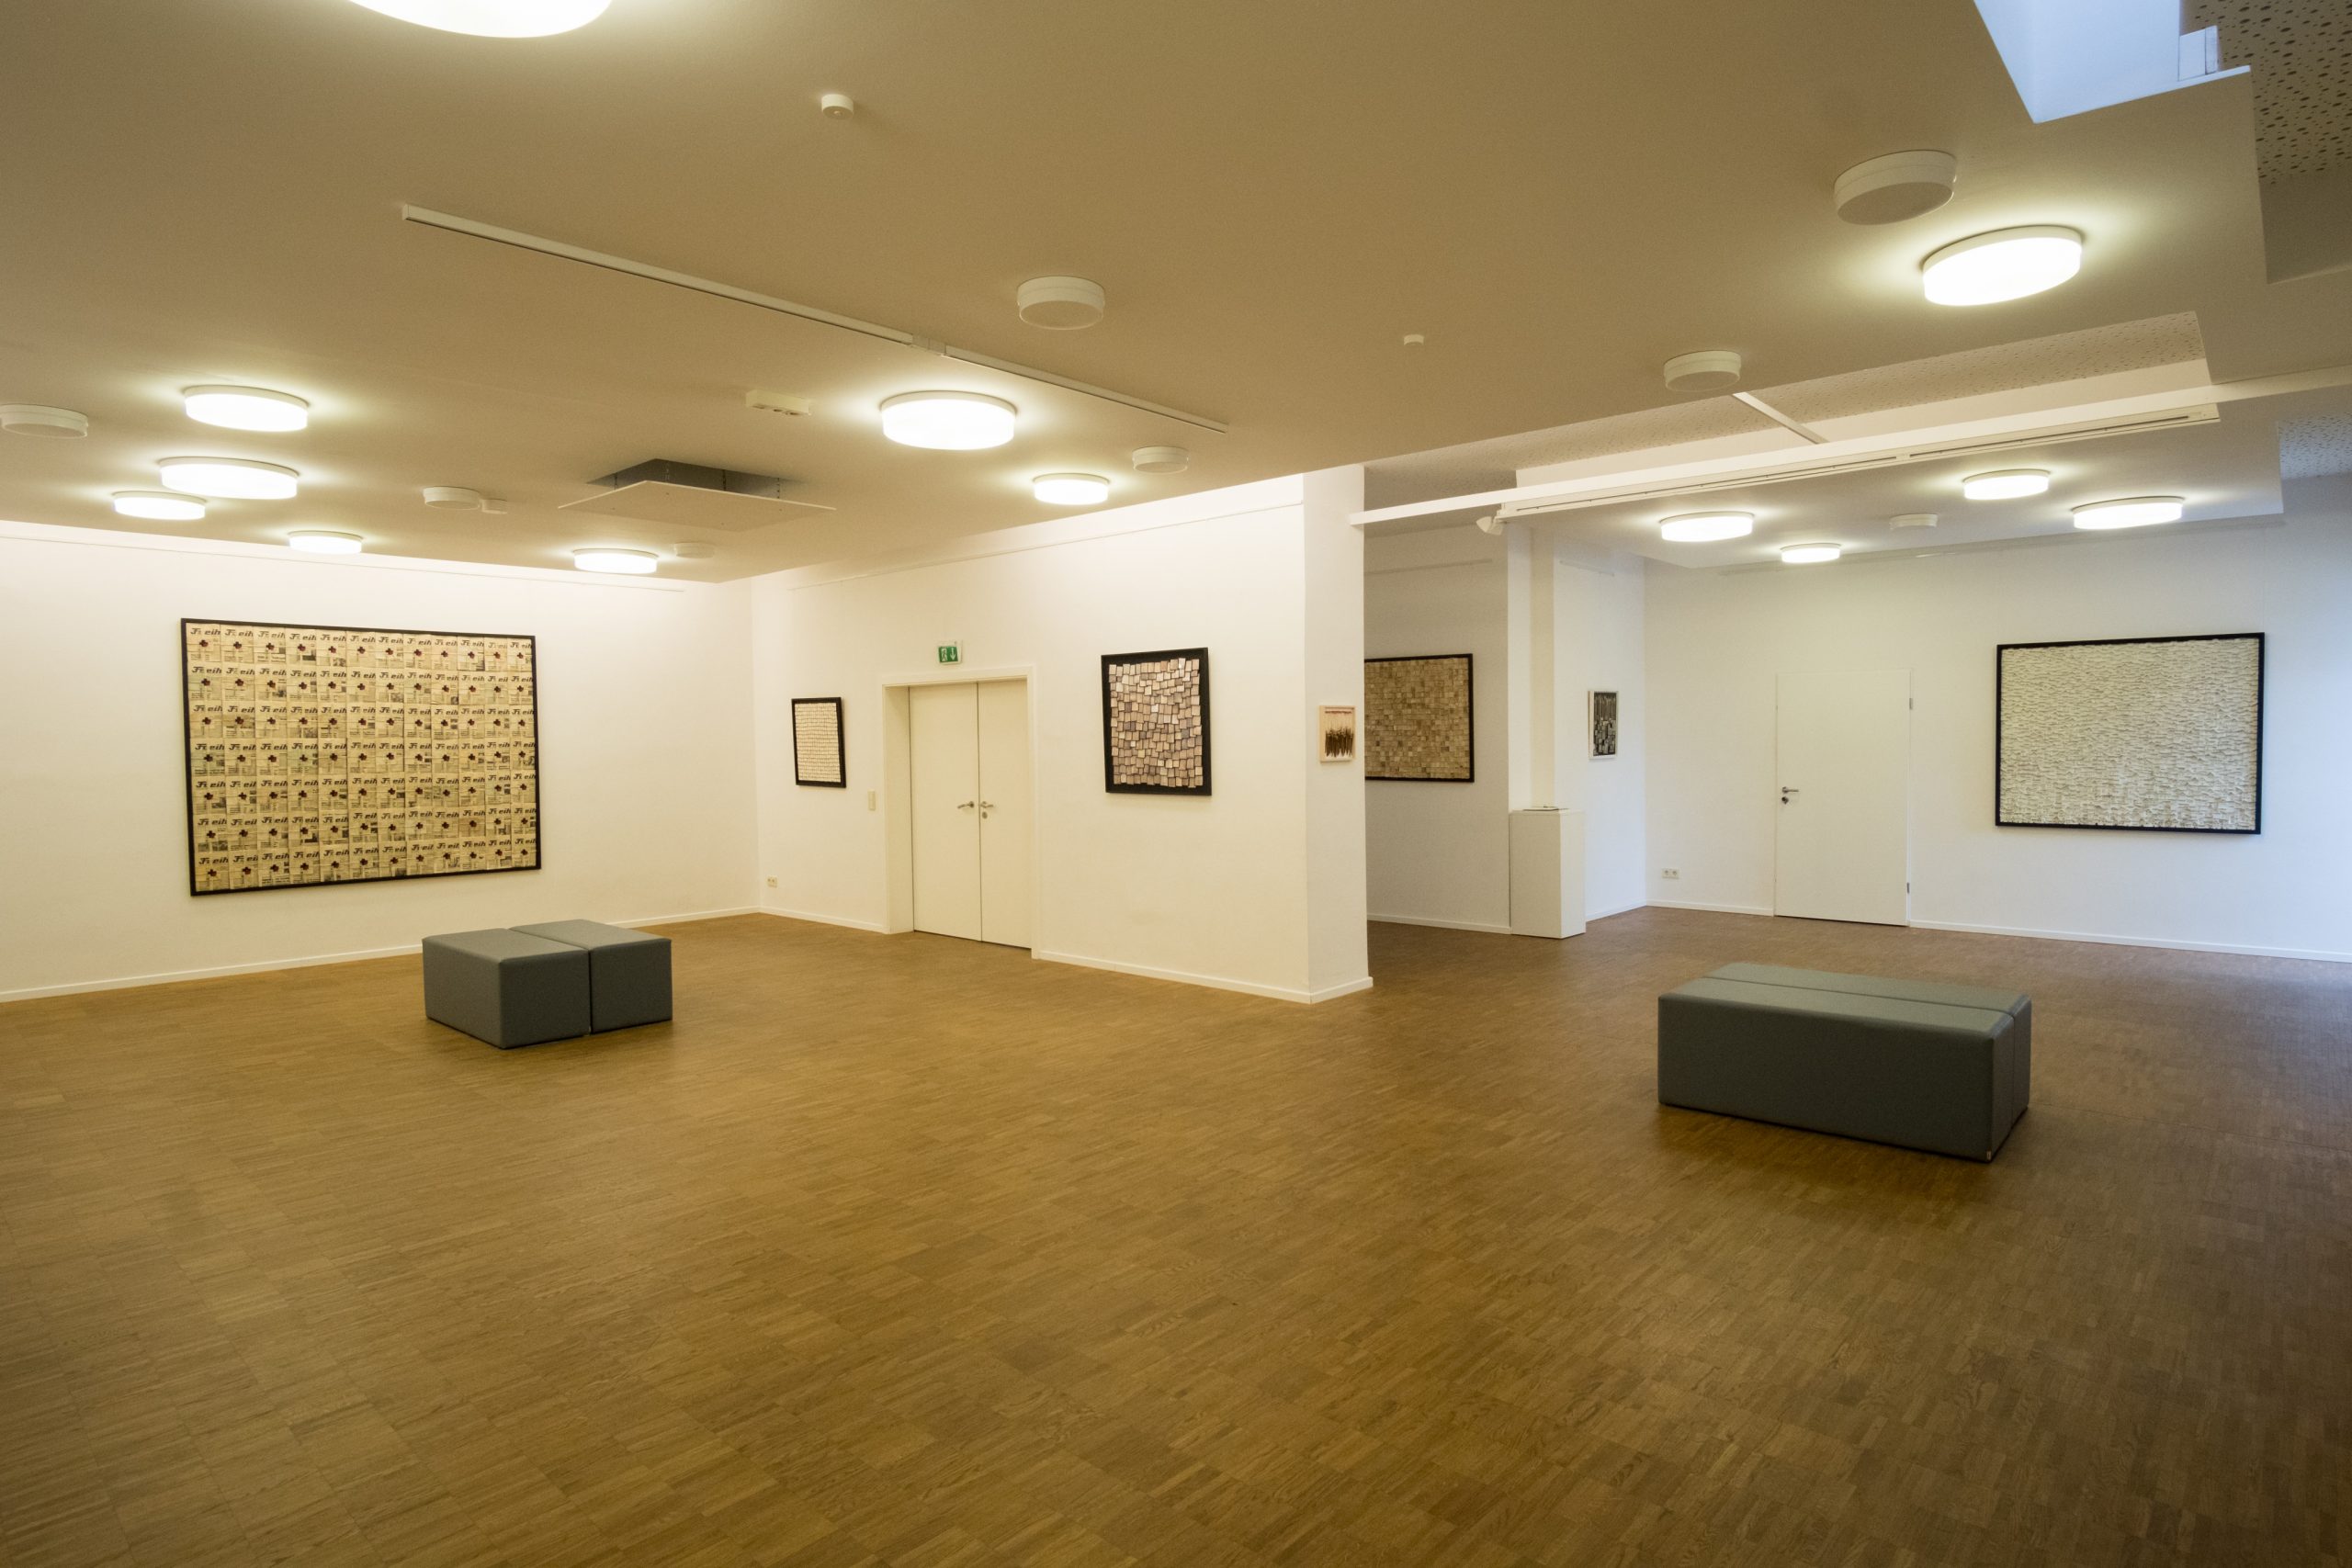 Galerie im ersten Obergeschoss des Lichthauses. Kunstwerke sind auf weißen Wänden platziert, zwei Doppelsitzbänke stehen auf dem Stäbchenparkettboden.